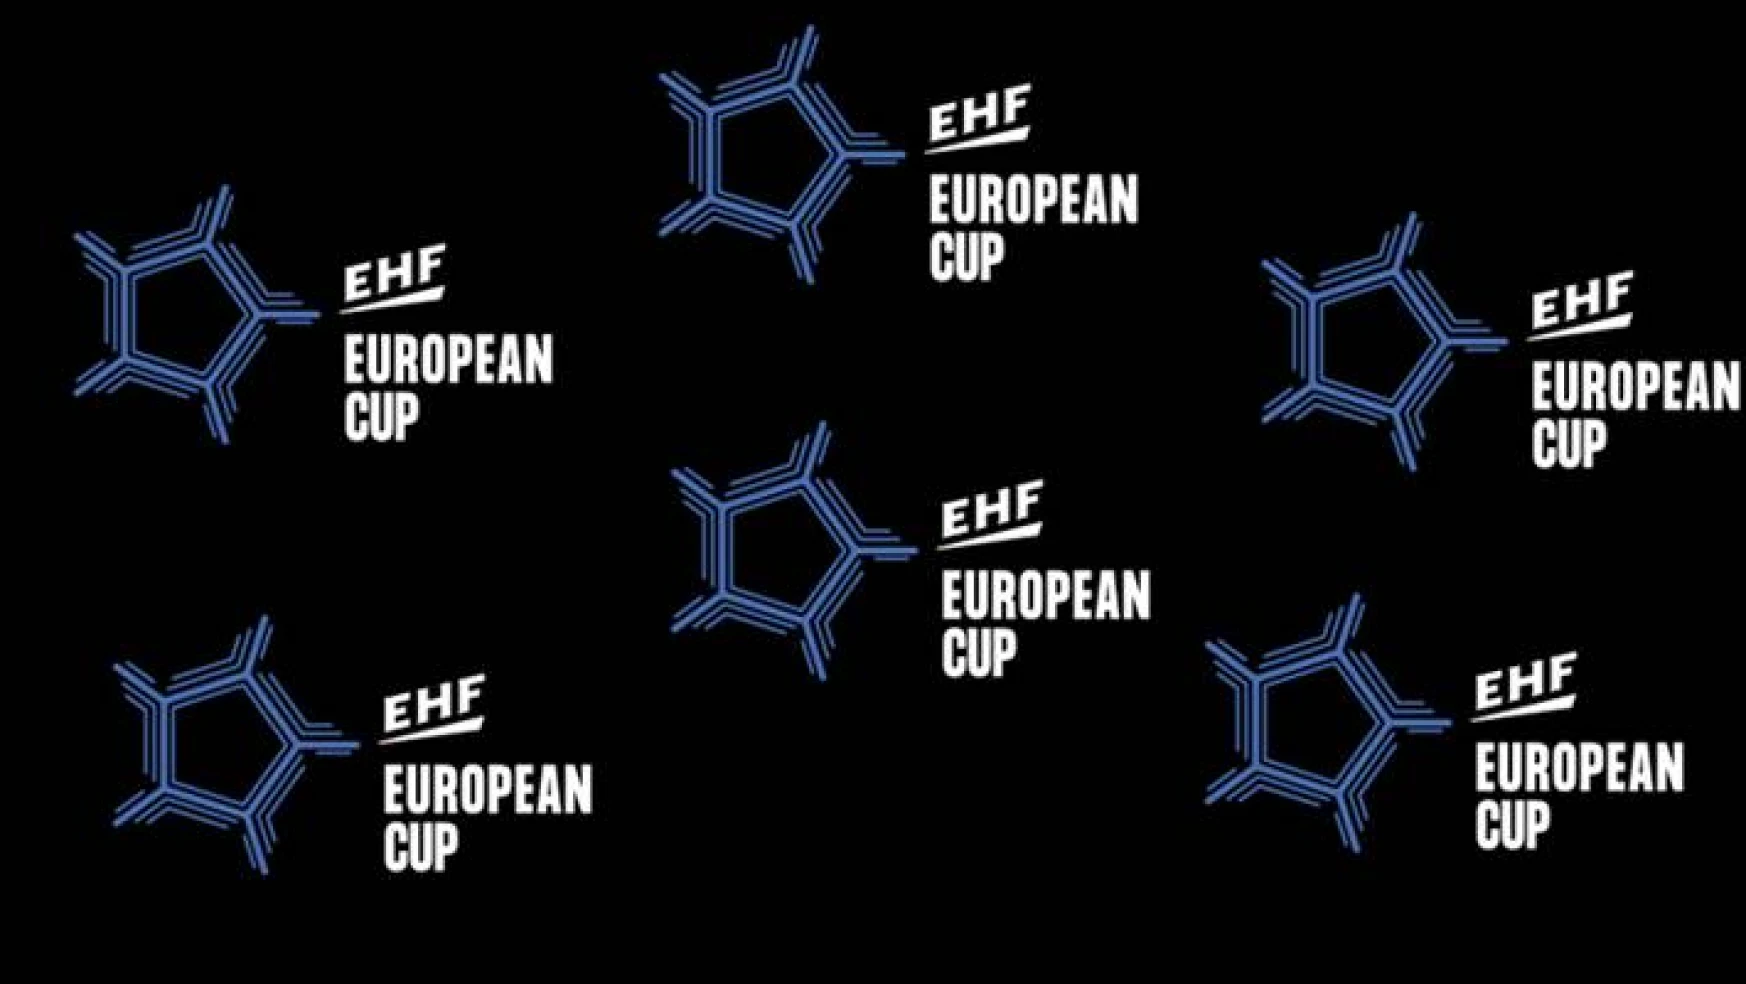 Yalıkavak, EHF’den haber bekliyor